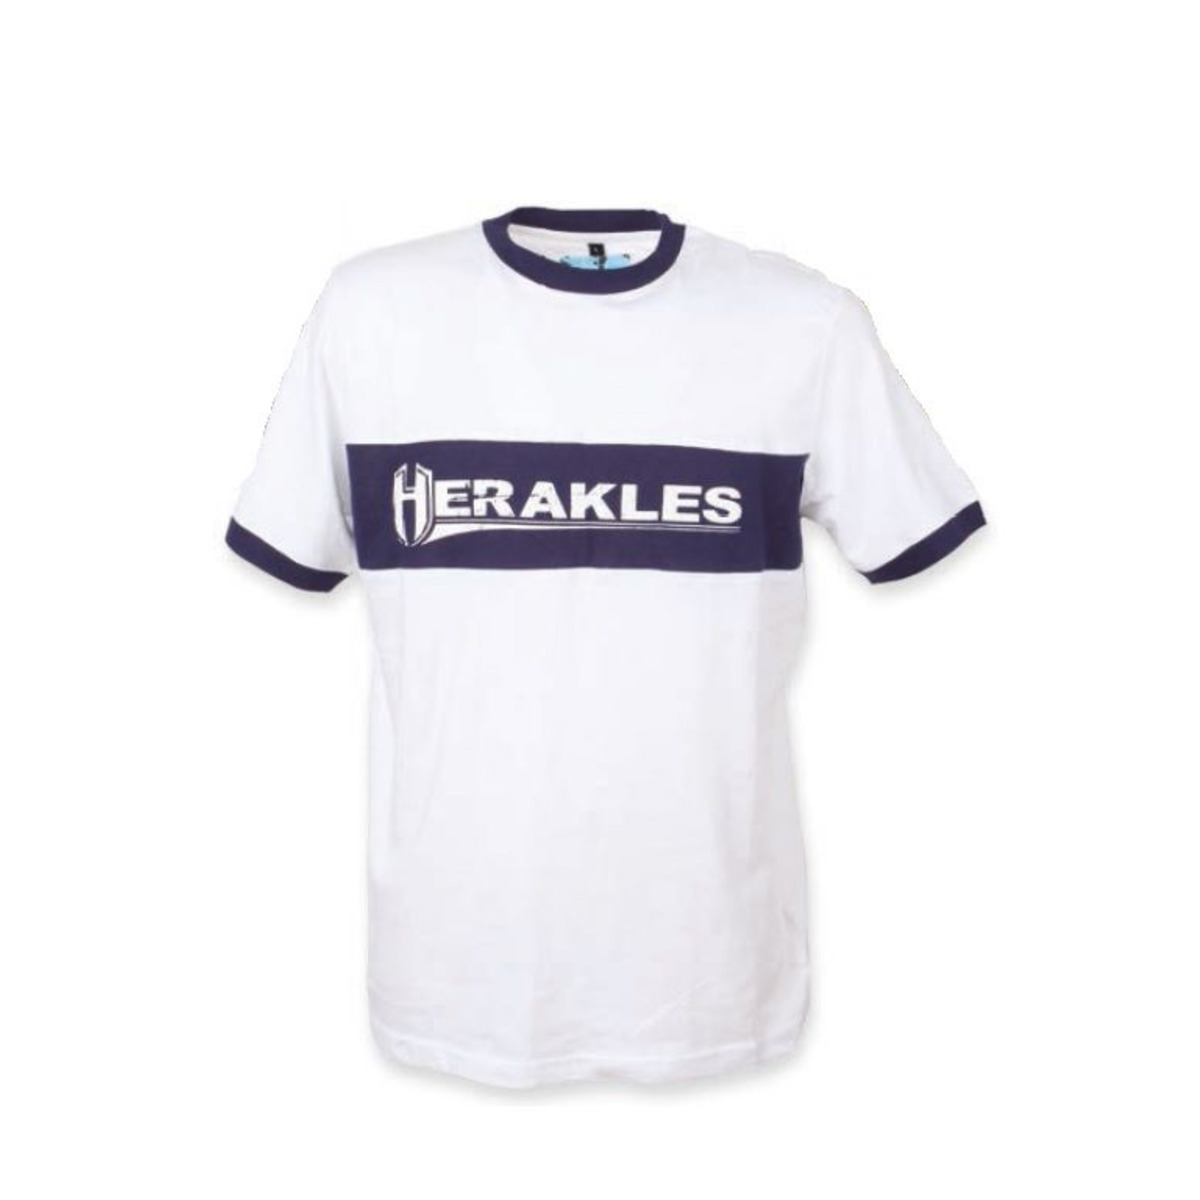 Herakles T-Shirt Weiß-Blau - L